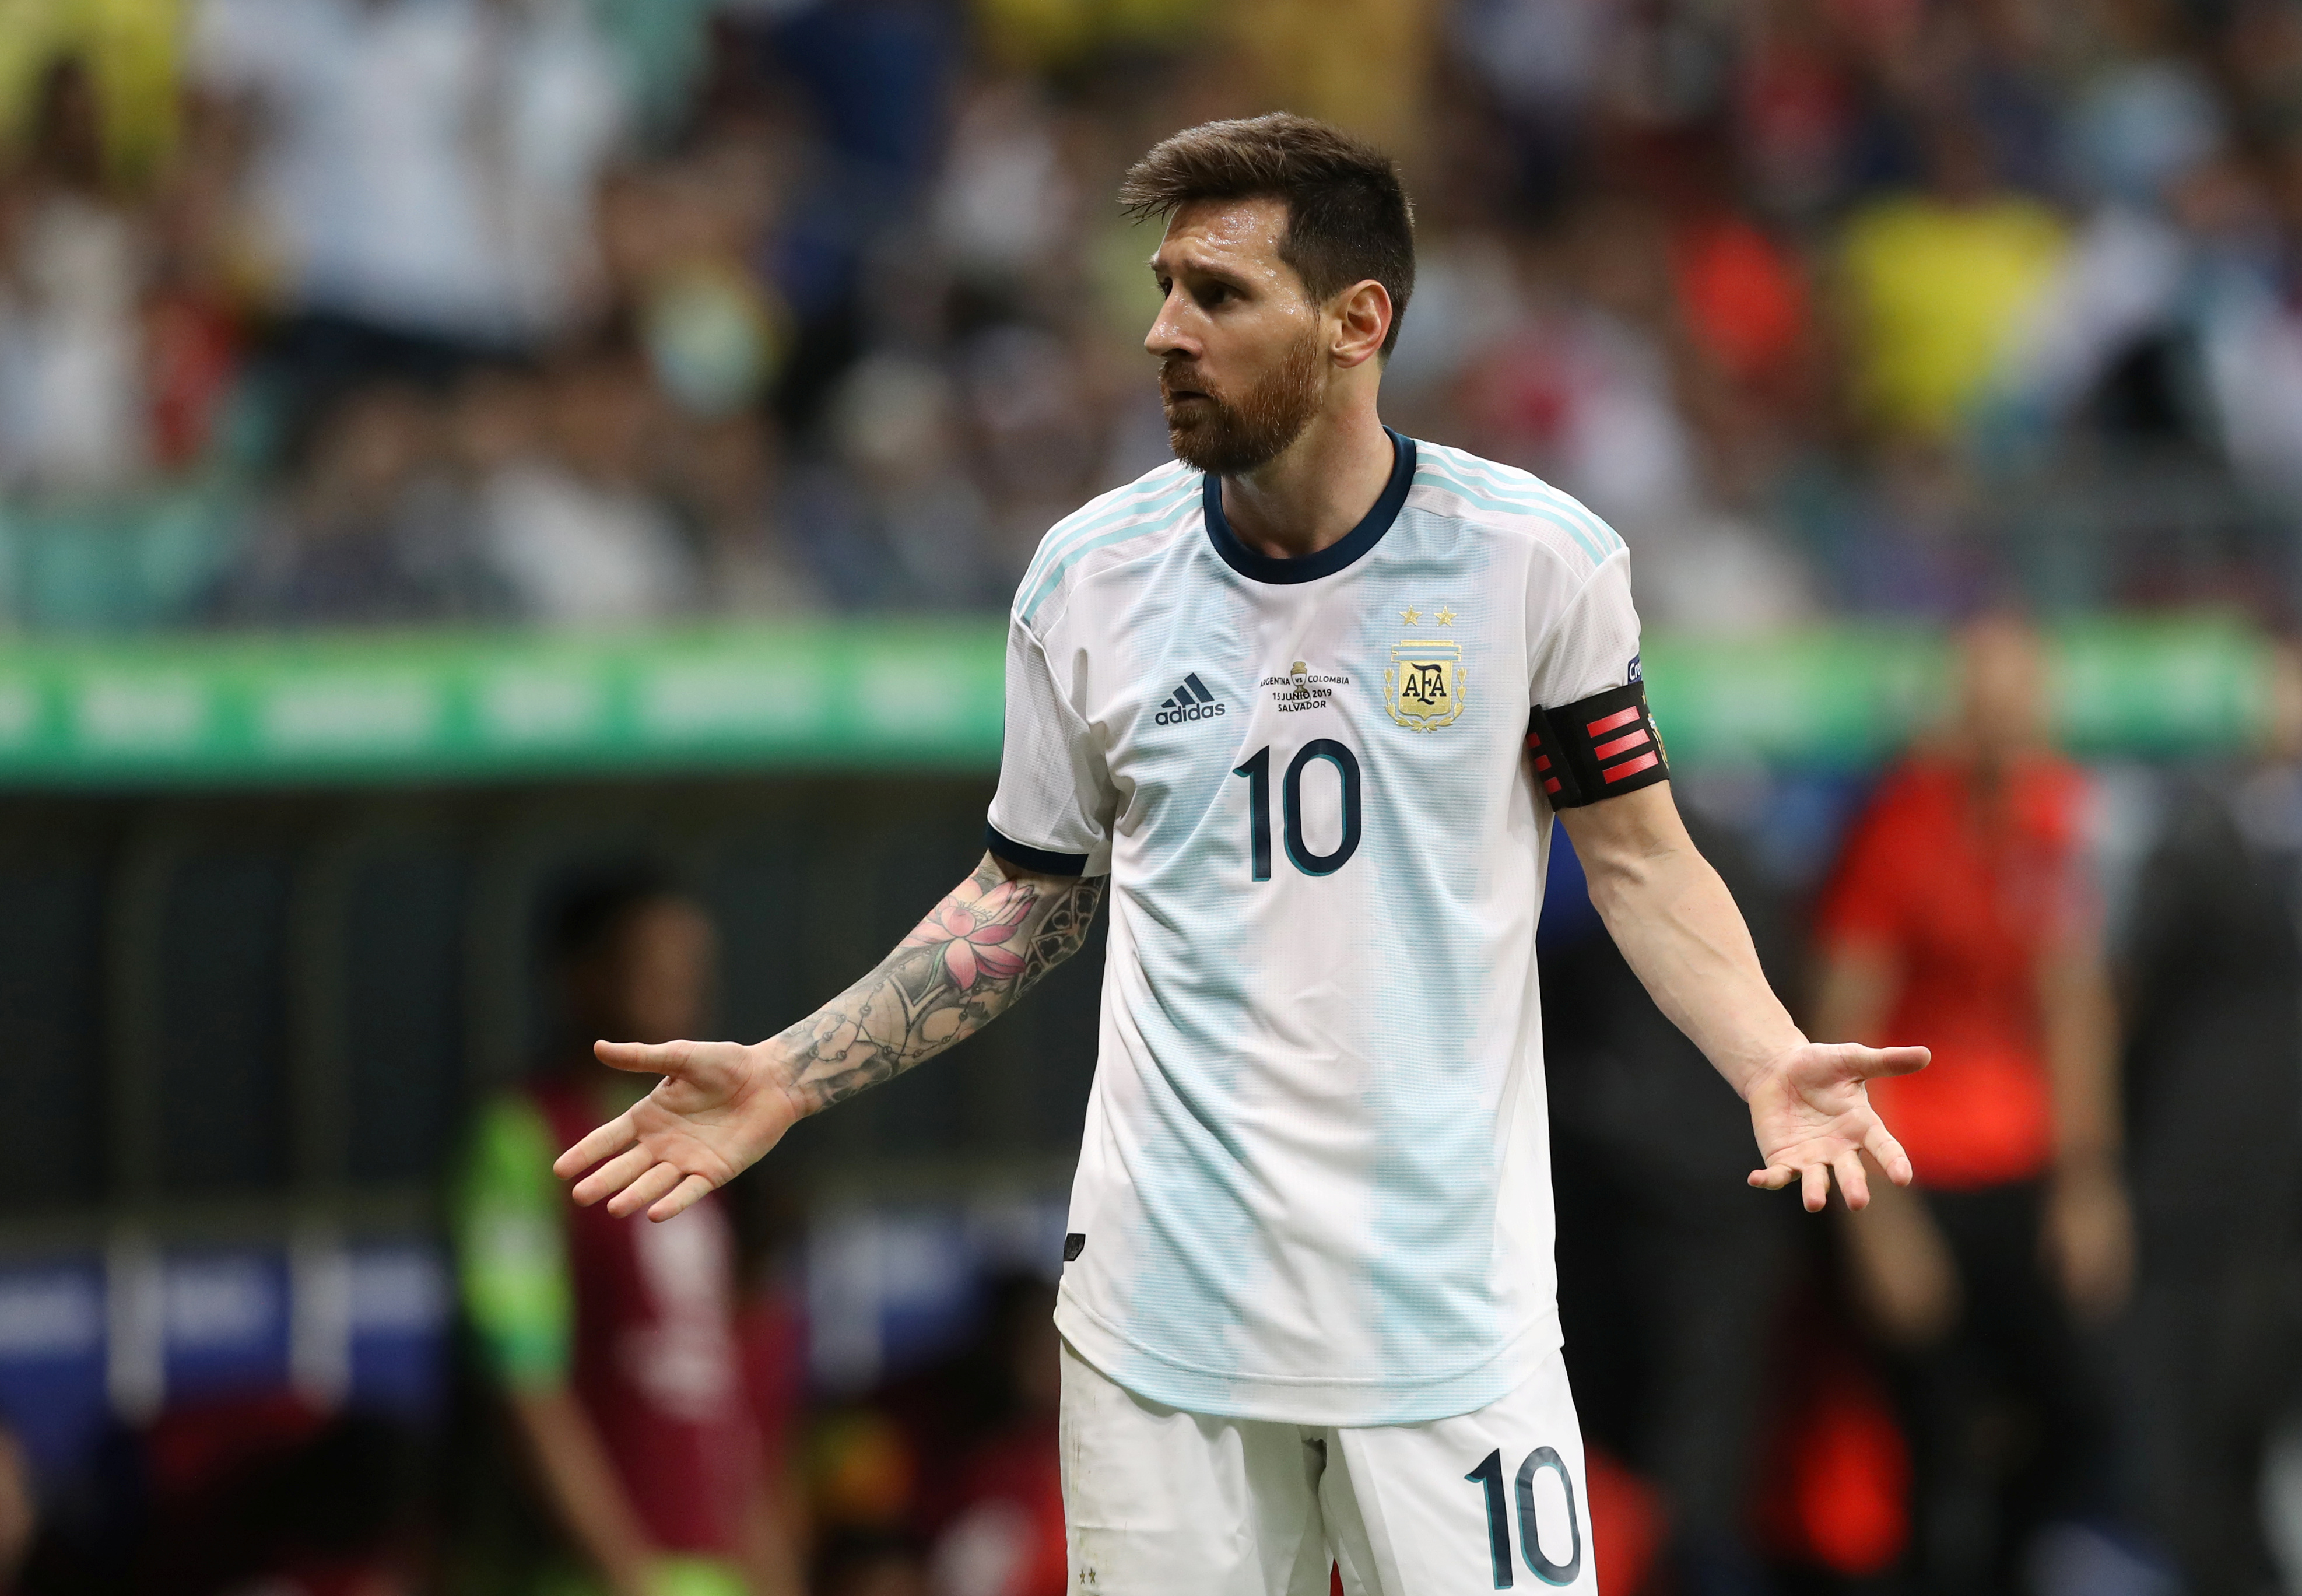 Argentina x Paraguai: assistir ao jogo da Copa América AO VIVO na TV